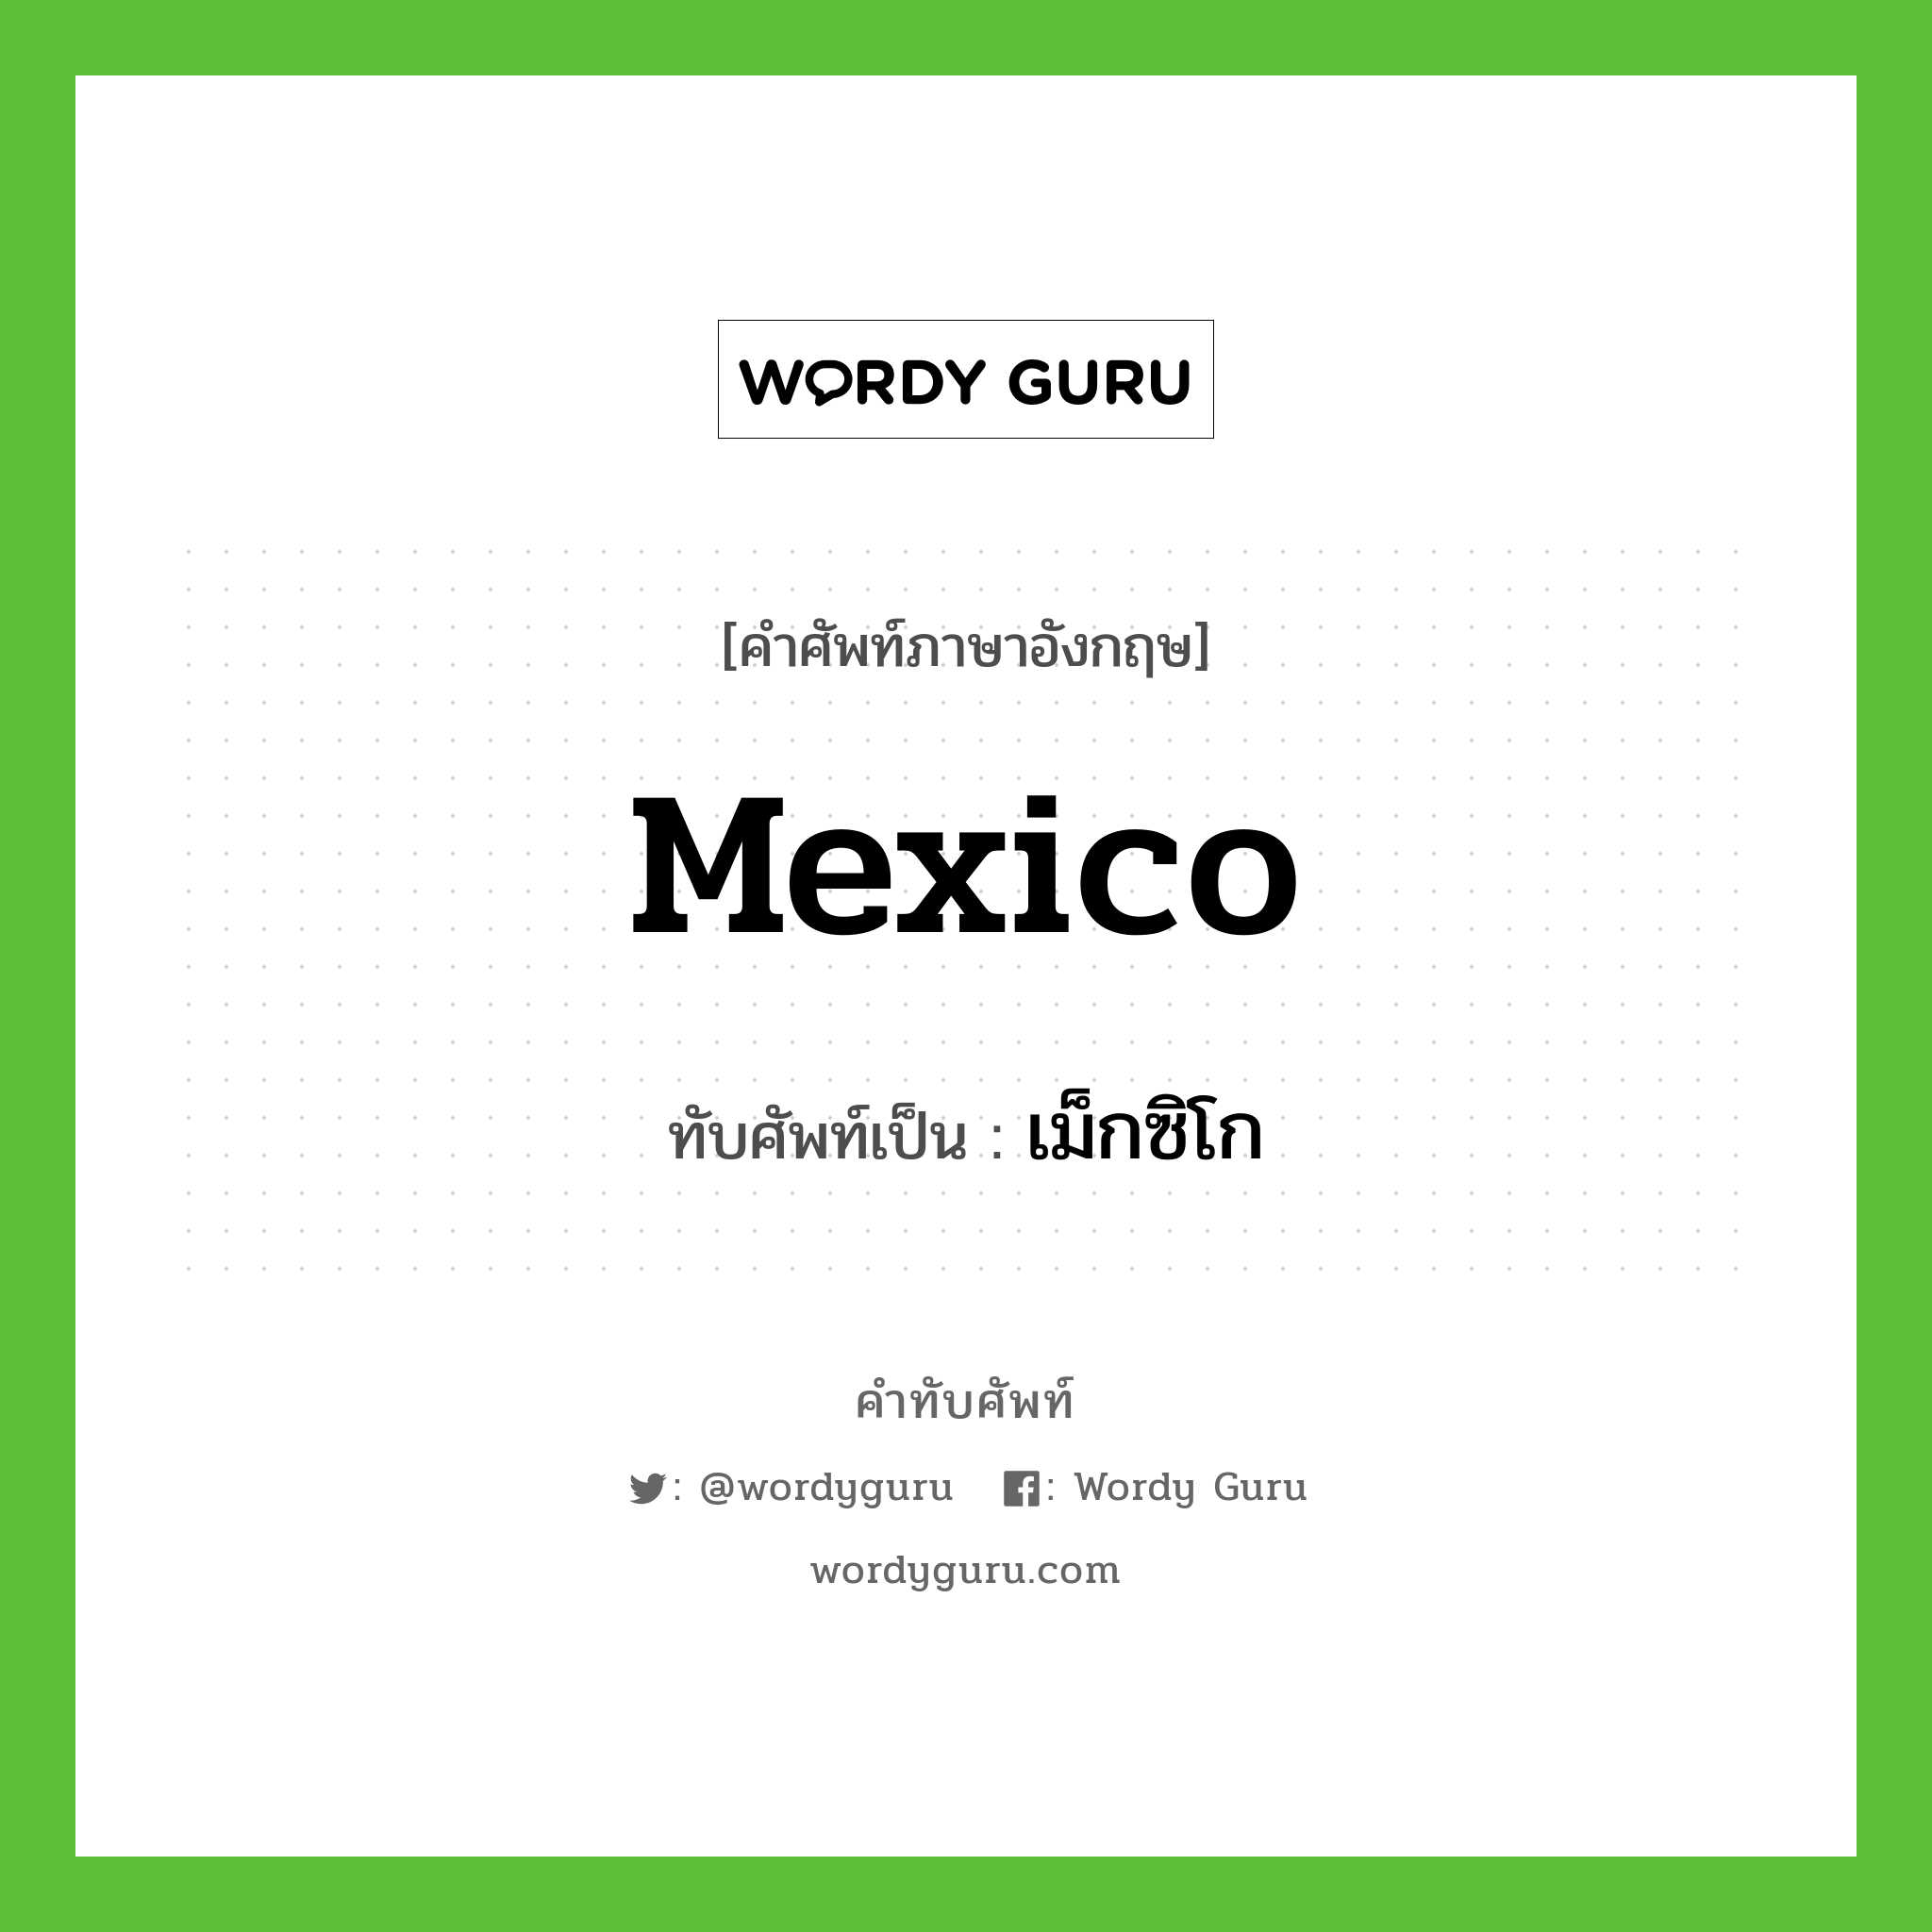 Mexico เขียนเป็นคำไทยว่าอะไร?, คำศัพท์ภาษาอังกฤษ Mexico ทับศัพท์เป็น เม็กซิโก